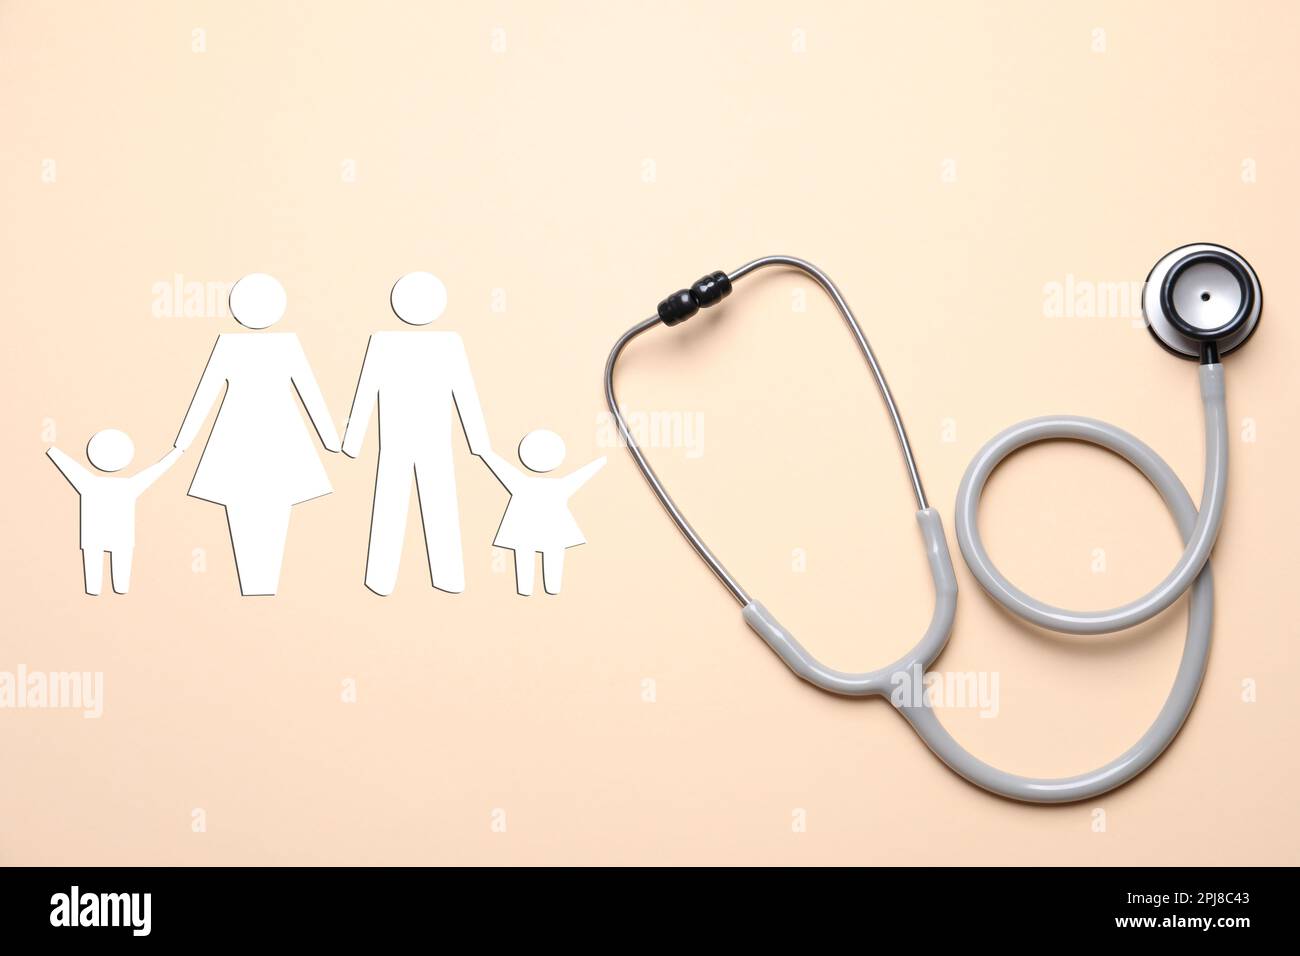 Krankenversicherung. Stethoskop und Darstellung der Produktfamilie auf beigefarbenem Hintergrund, Draufsicht Stockfoto